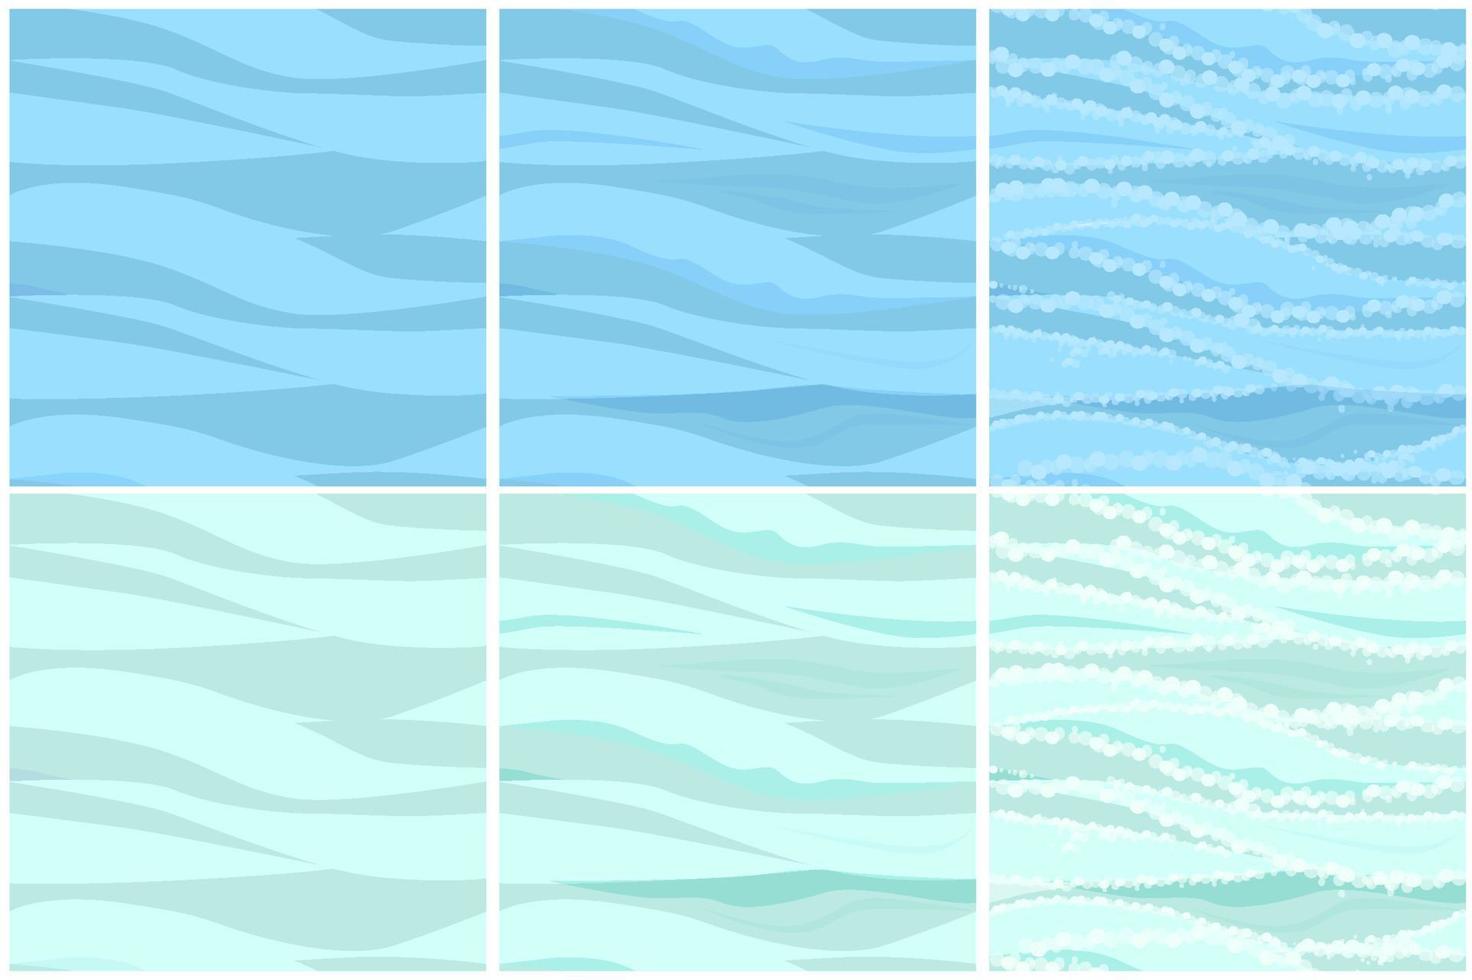 conjunto de patrones de agua sin fisuras en 3 pasos. fondo abstracto texturizado de las olas del mar en el dibujo. vector